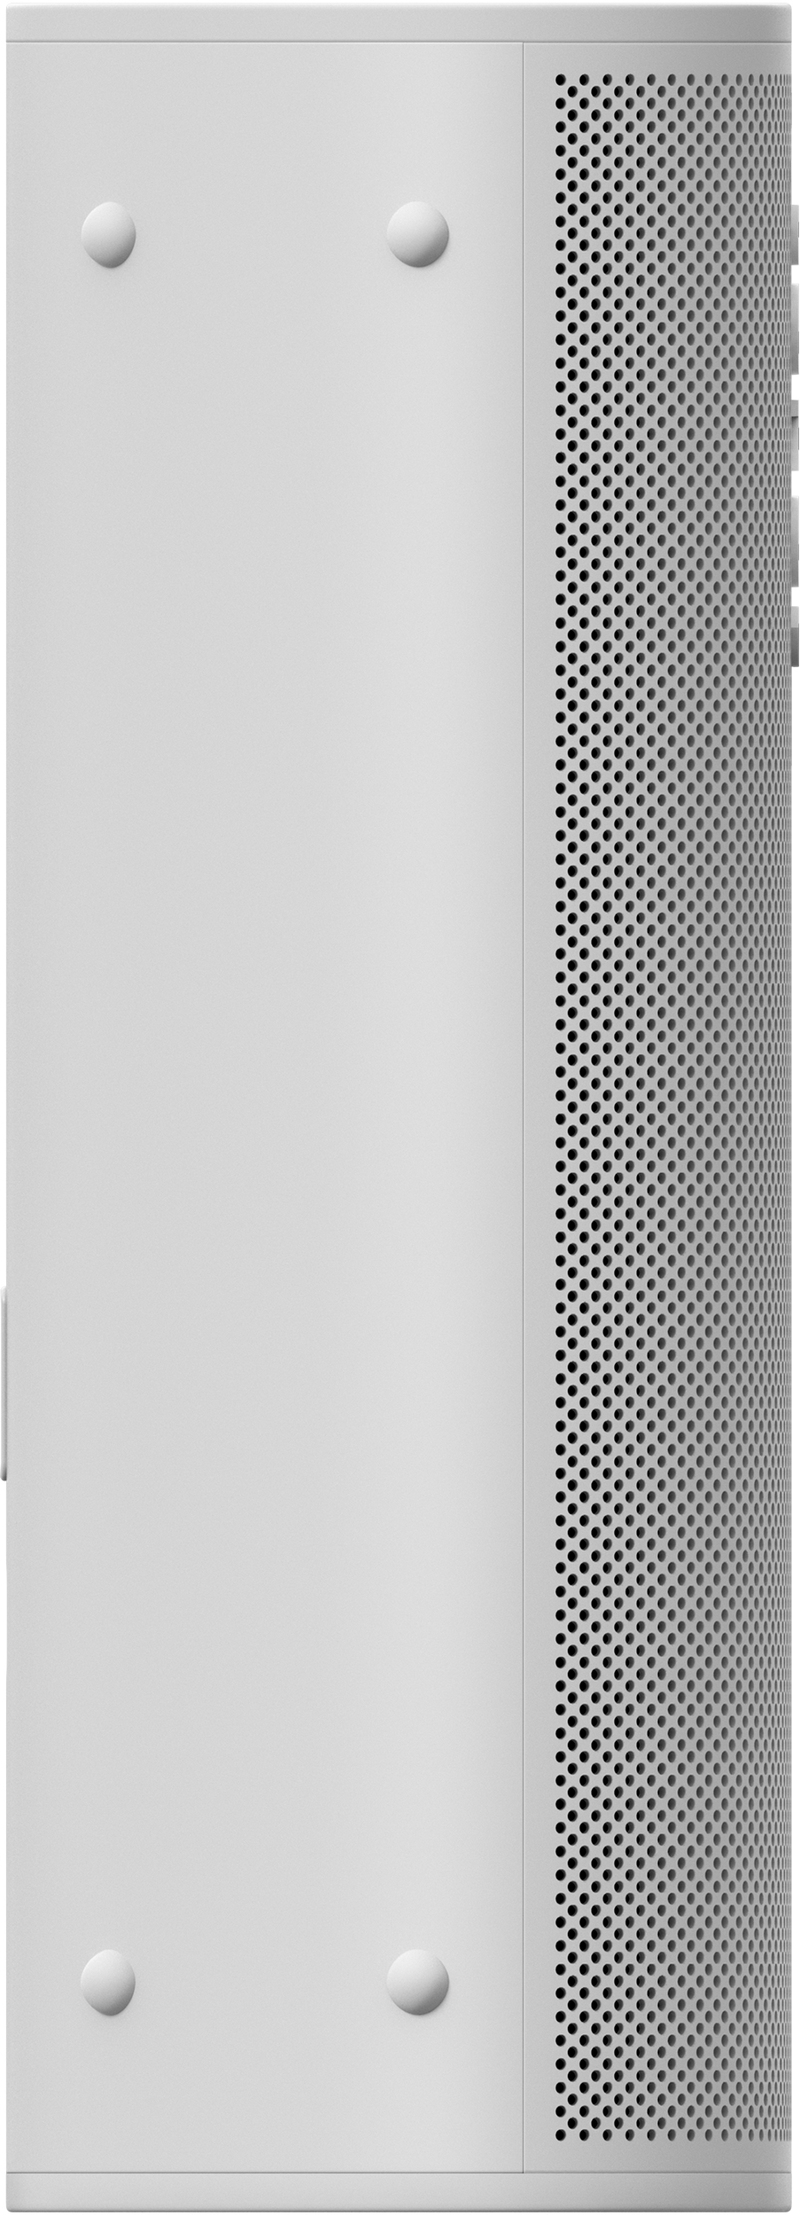 Sonos Roam Lunar Portable Smart Speaker - White